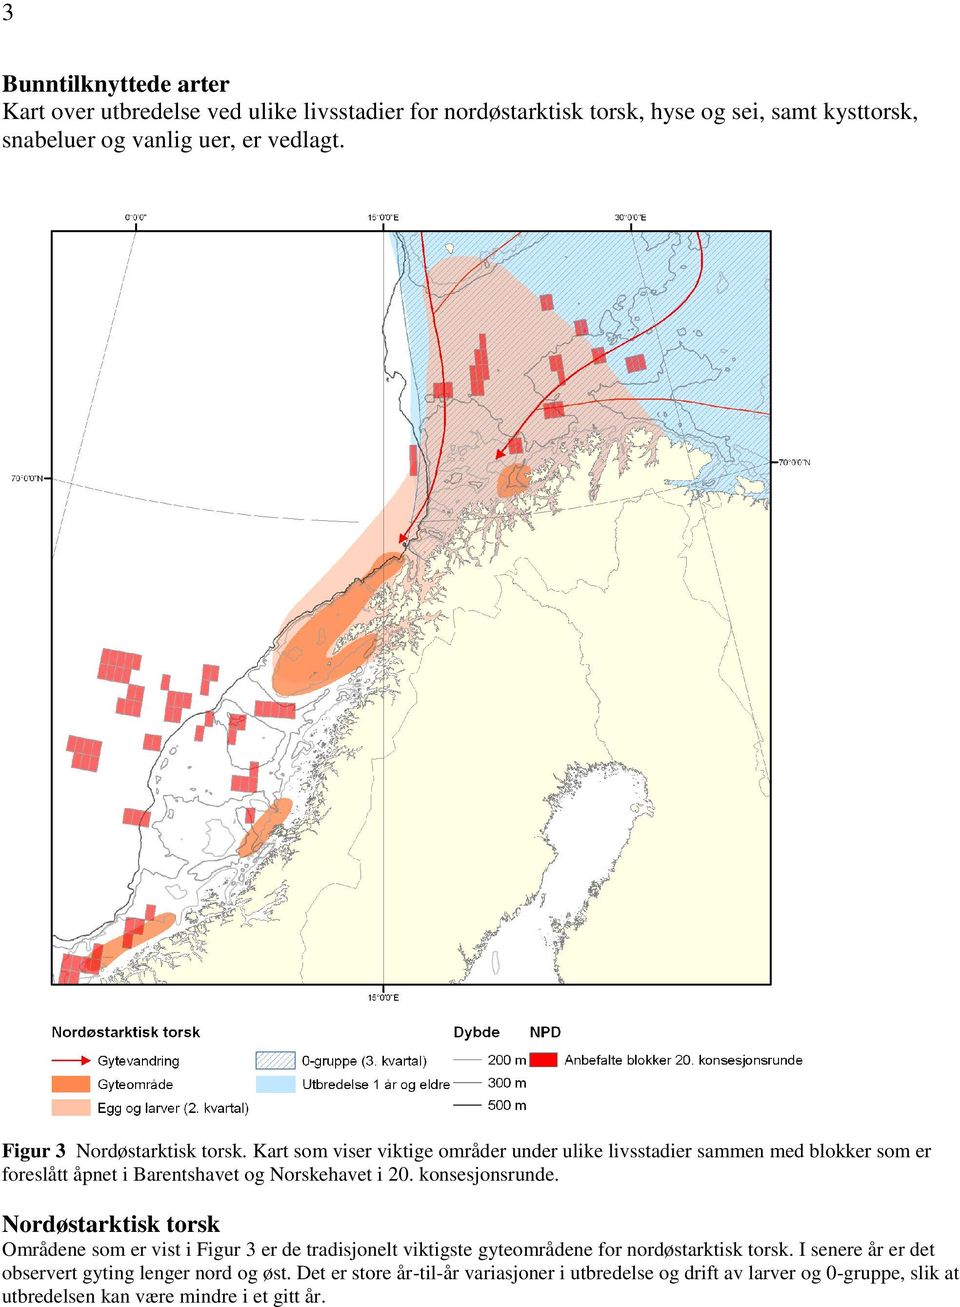 Kart som viser viktige områder under ulike livsstadier sammen med blokker som er foreslått åpnet i Barentshavet og Norskehavet i 20. konsesjonsrunde.